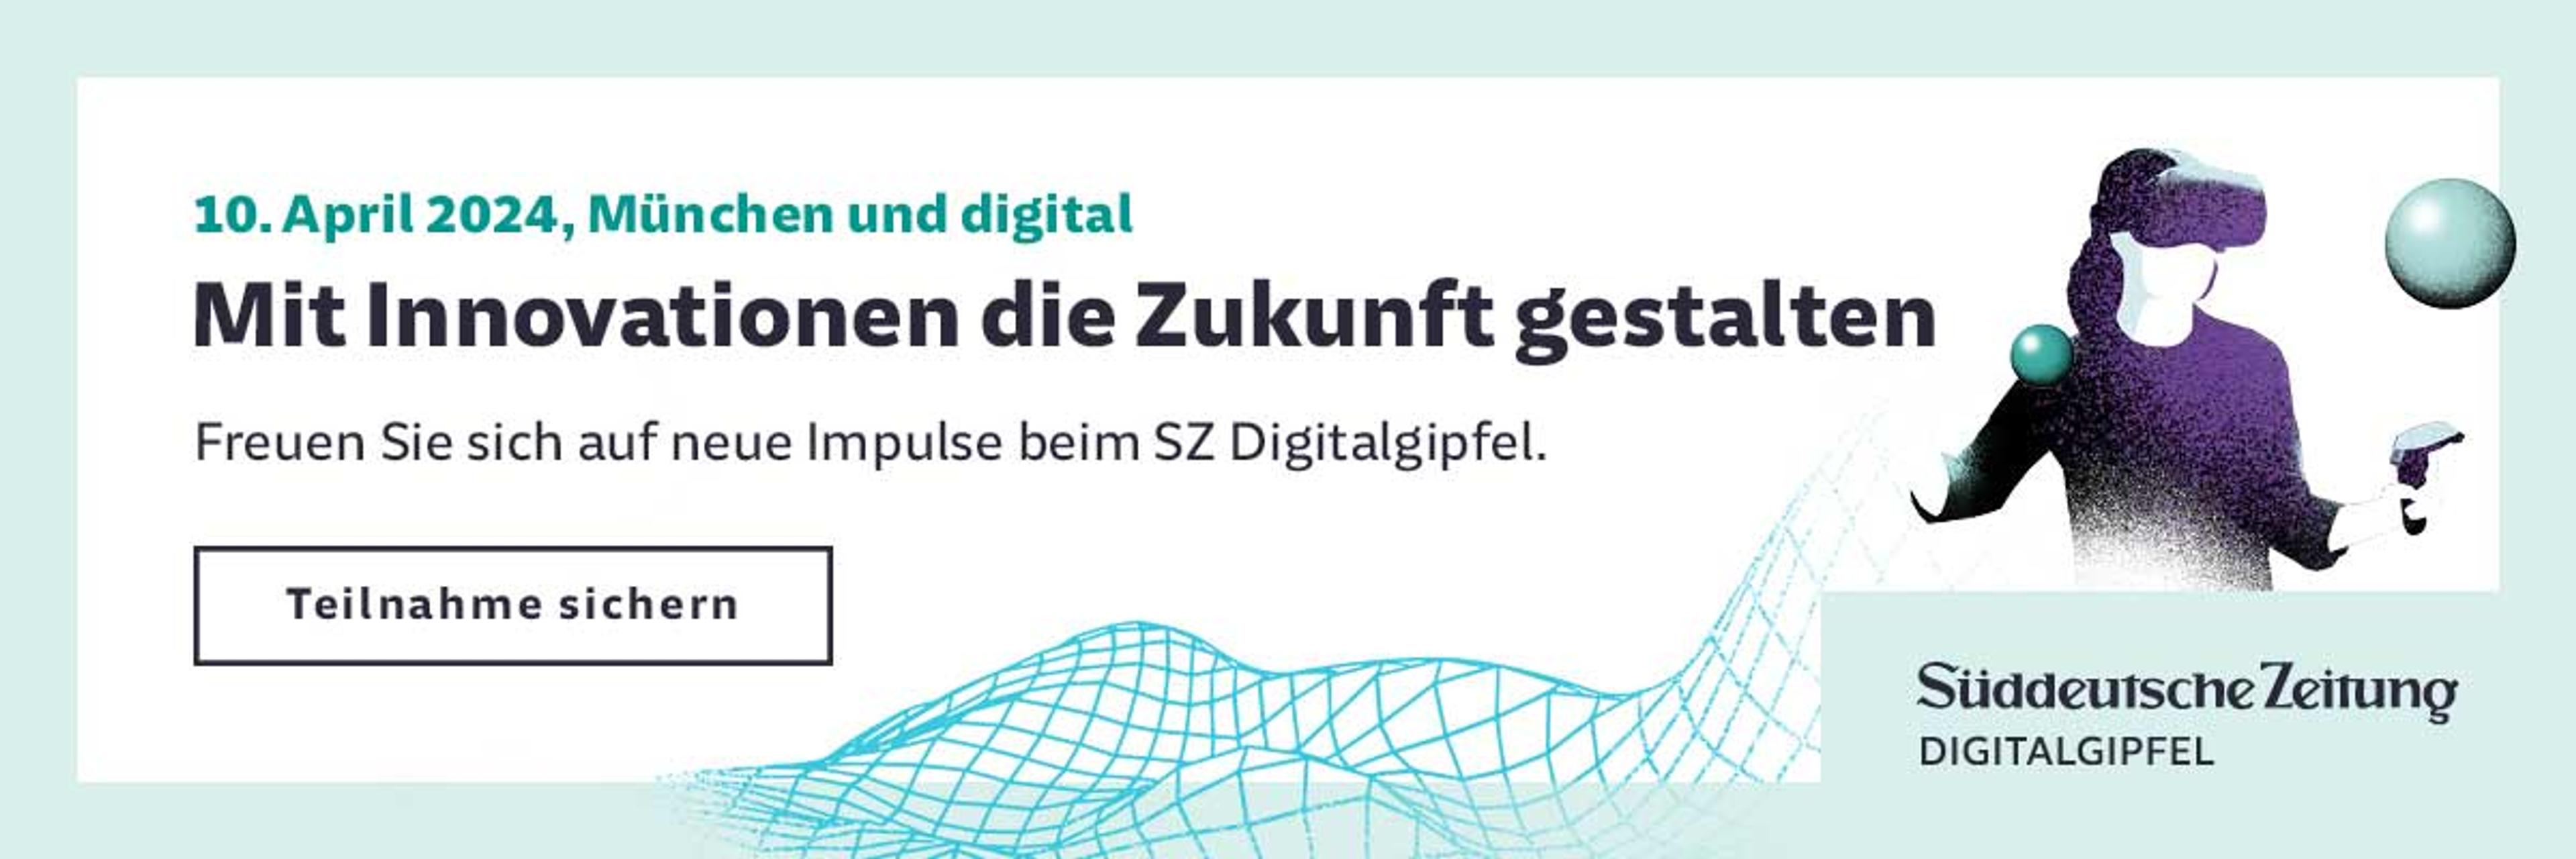 Süddeutsche Zeitung Digitalgipfel